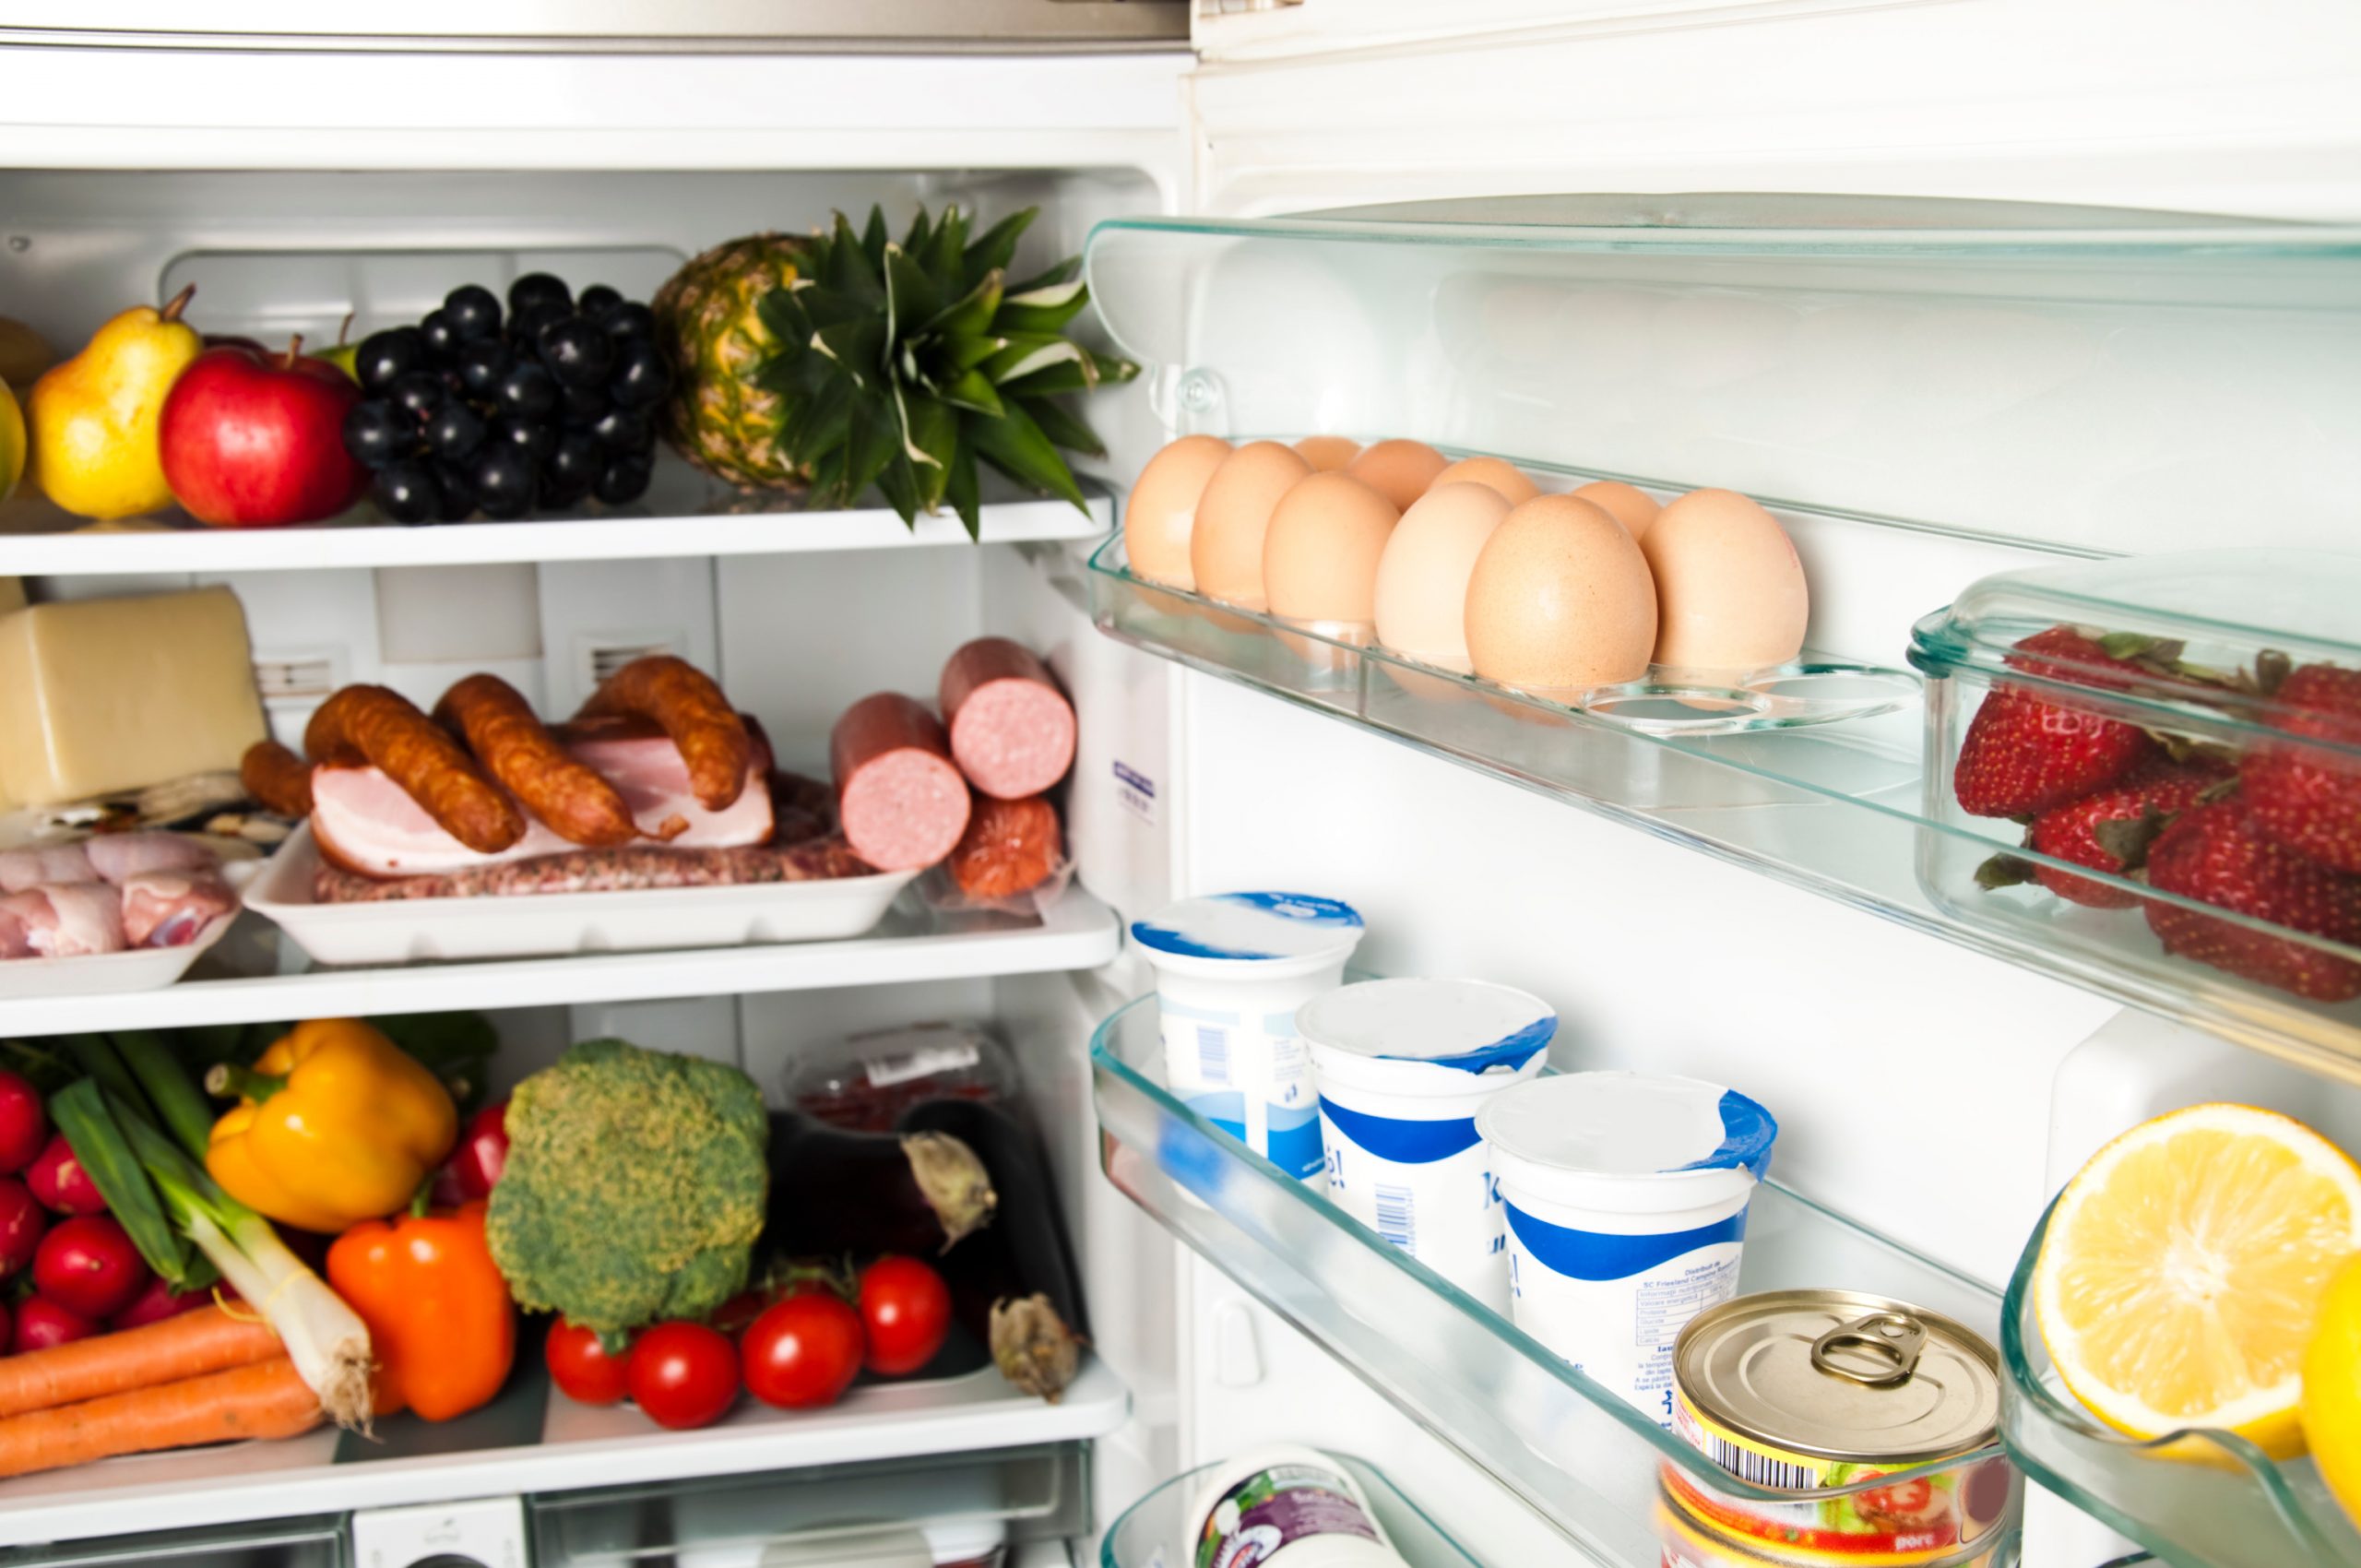 Питание холодильника. Проддуктыв холодильнике. Холодильник с продуктами. Полный холодильник продуктов. Холодильник с едой.